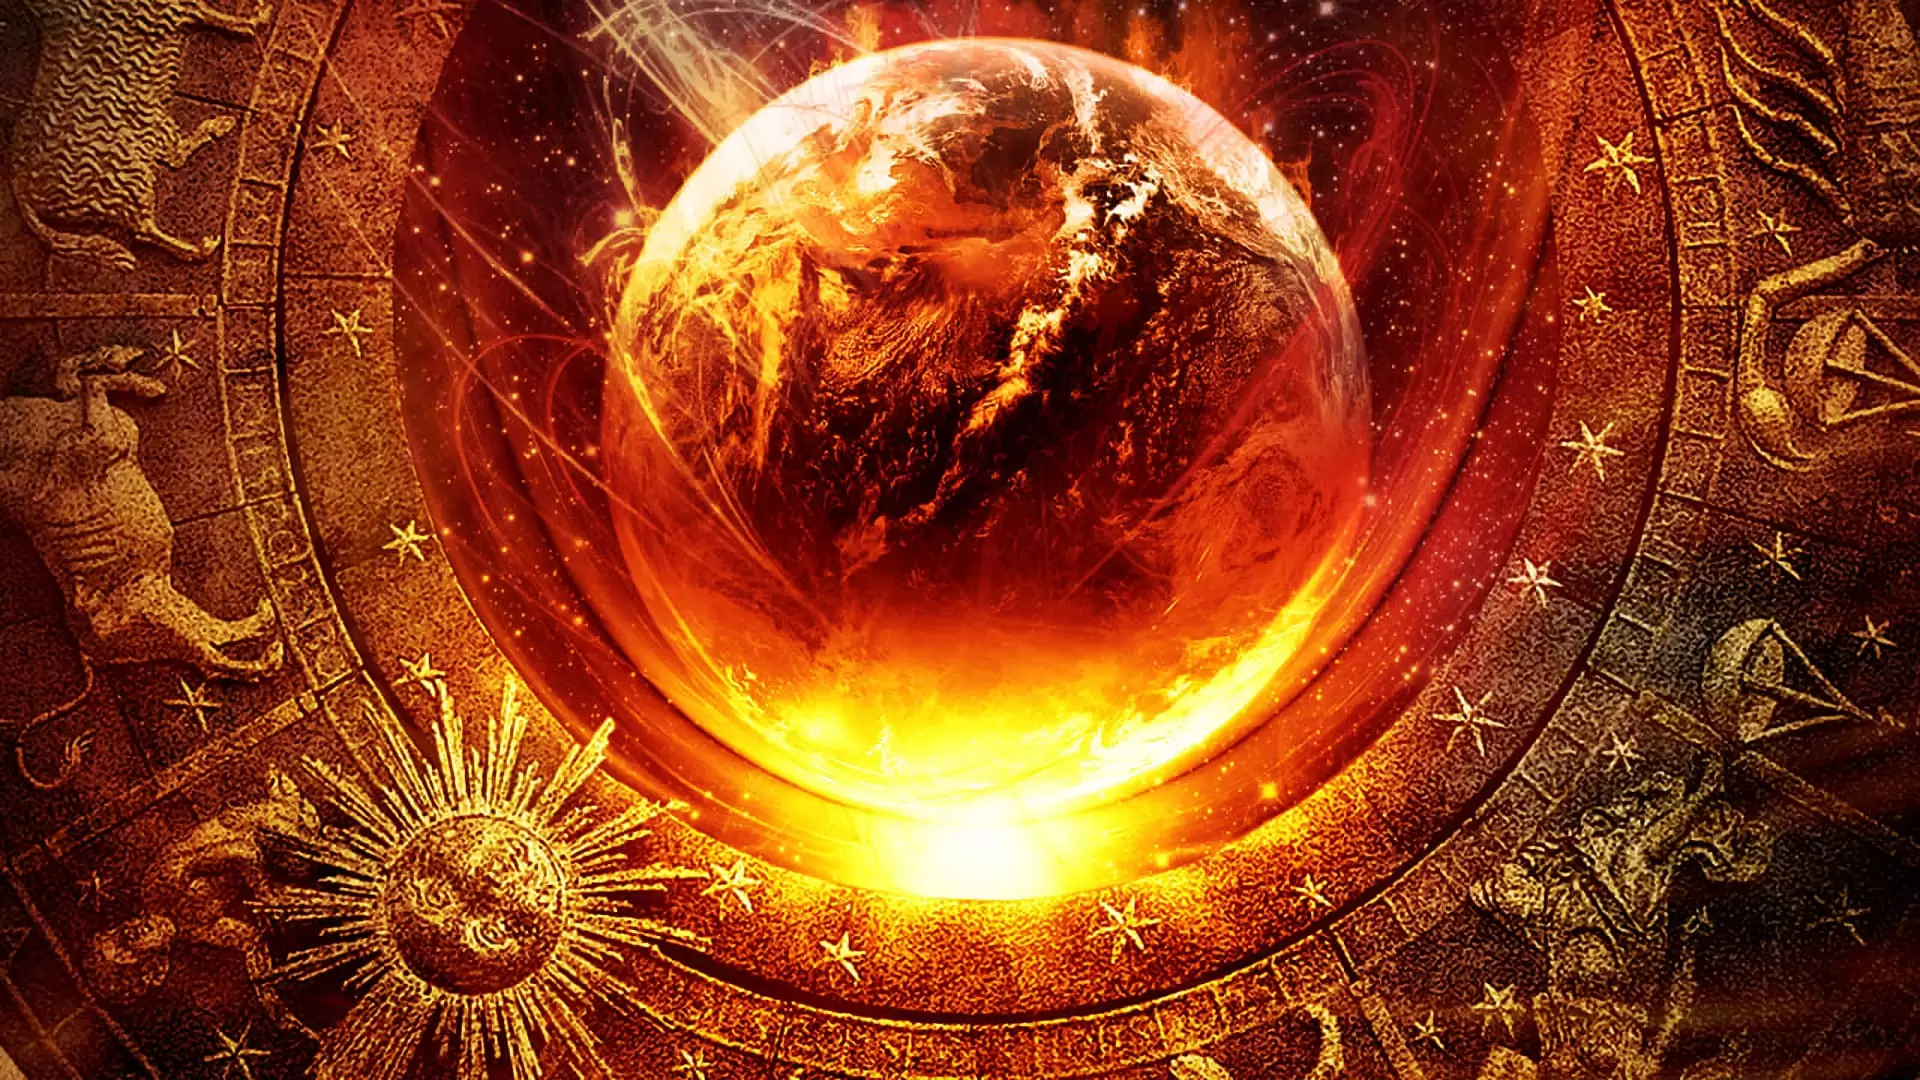 دانلود فیلم Zodiac: Signs of the Apocalypse 2014 با زیرنویس فارسی